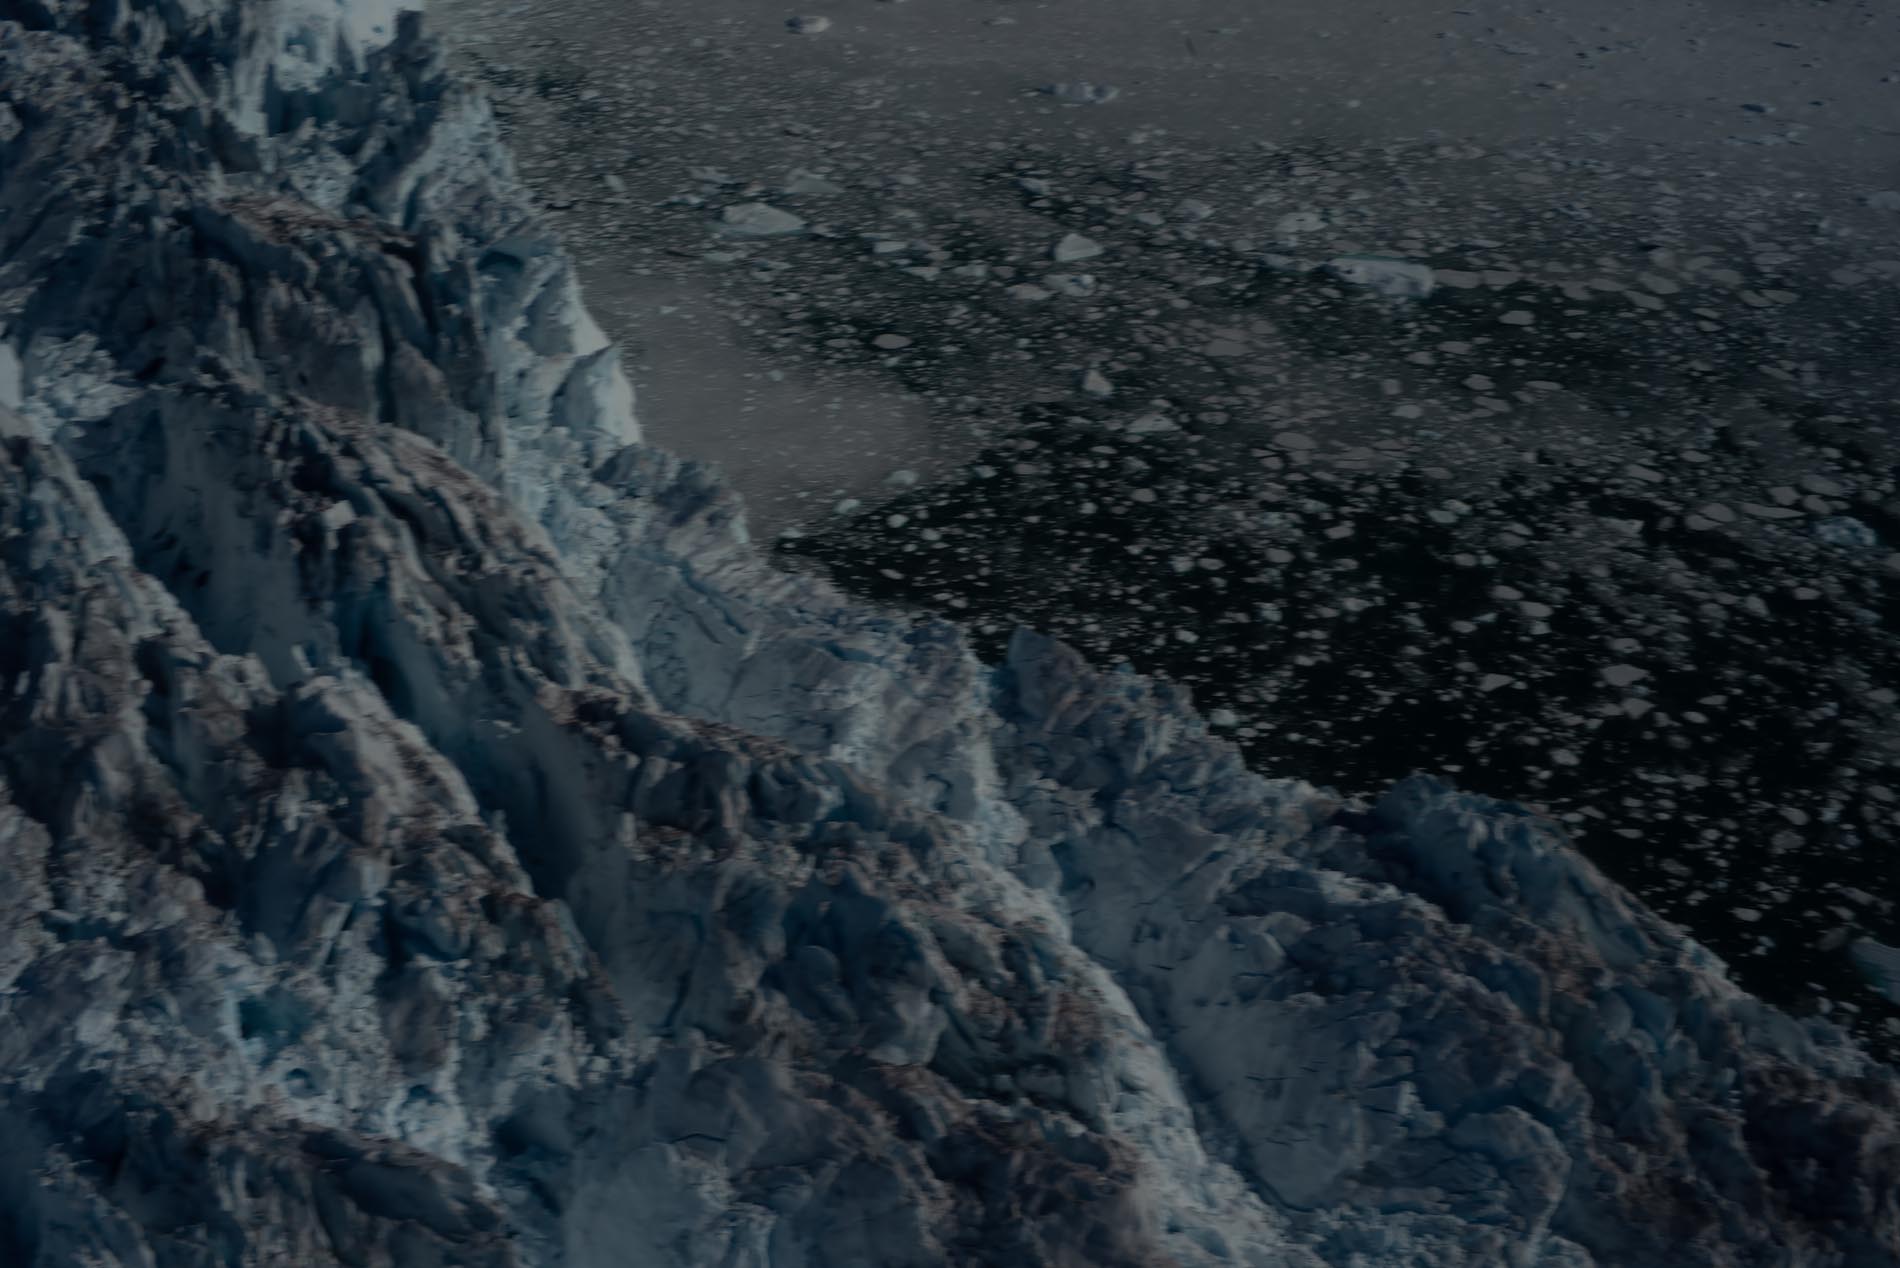 Calving--Breaking--Glacier, Greenland